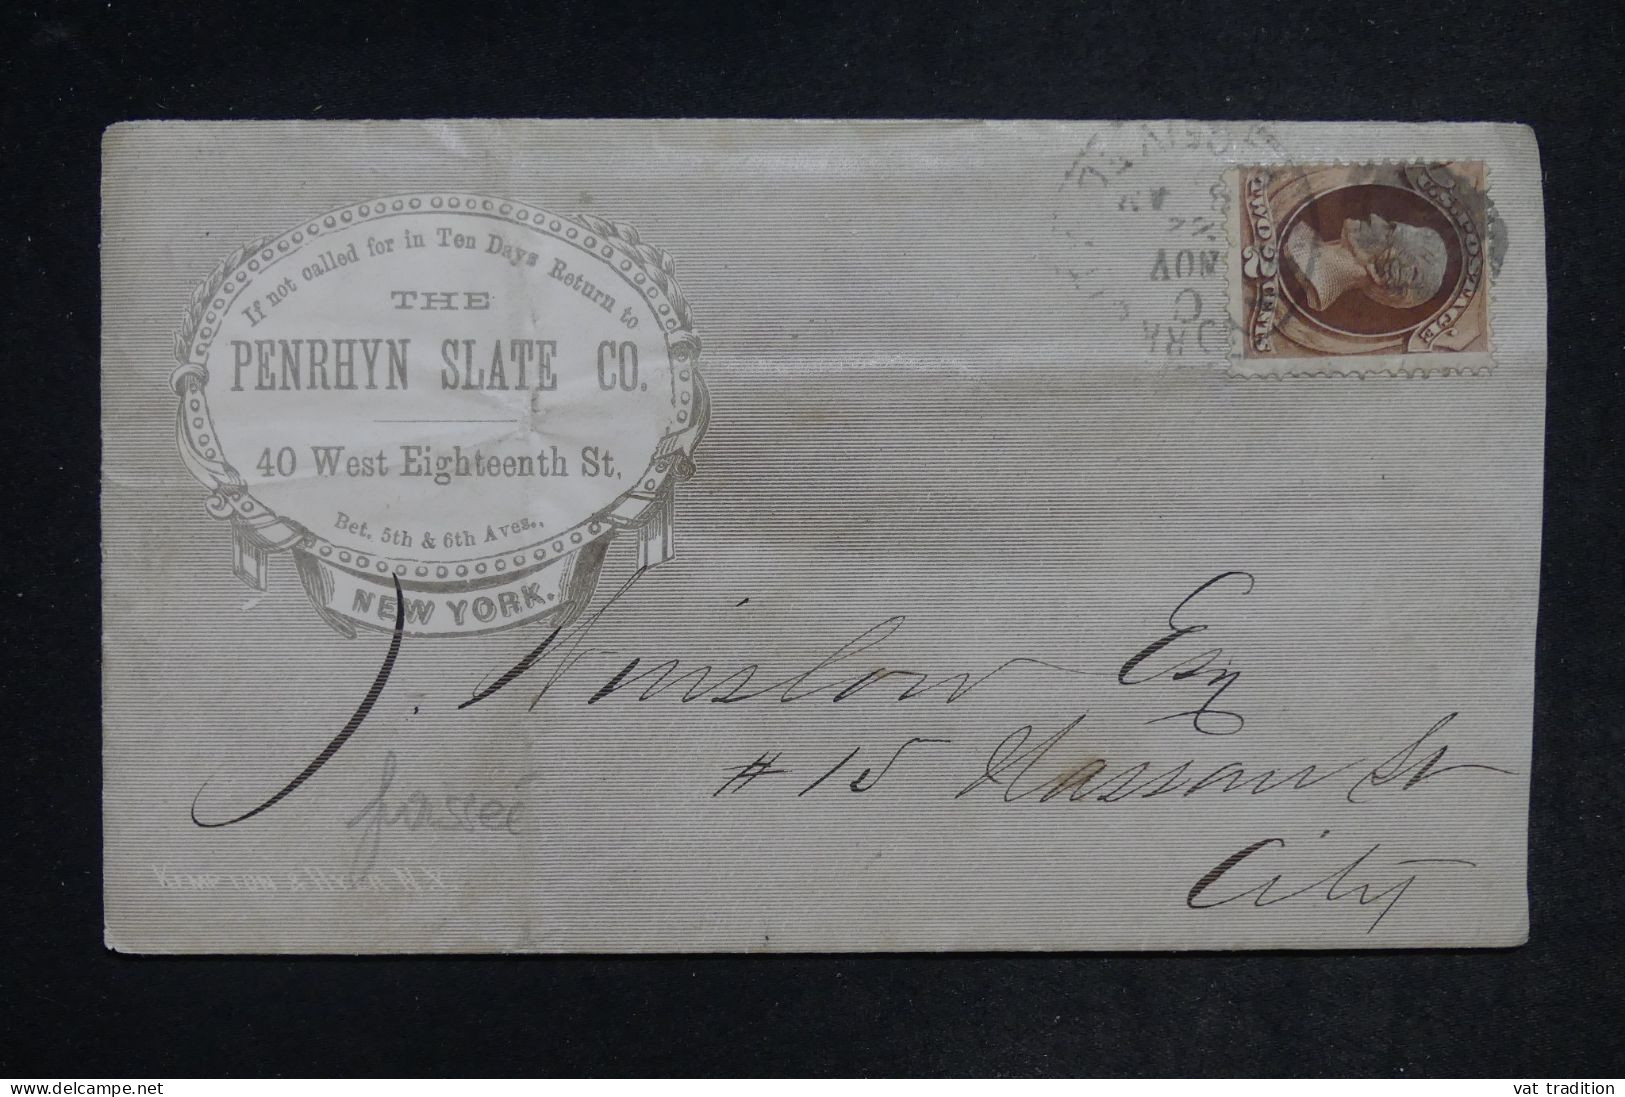 ETATS UNIS -Enveloppe Commerciale De New York - L 152418 - Storia Postale